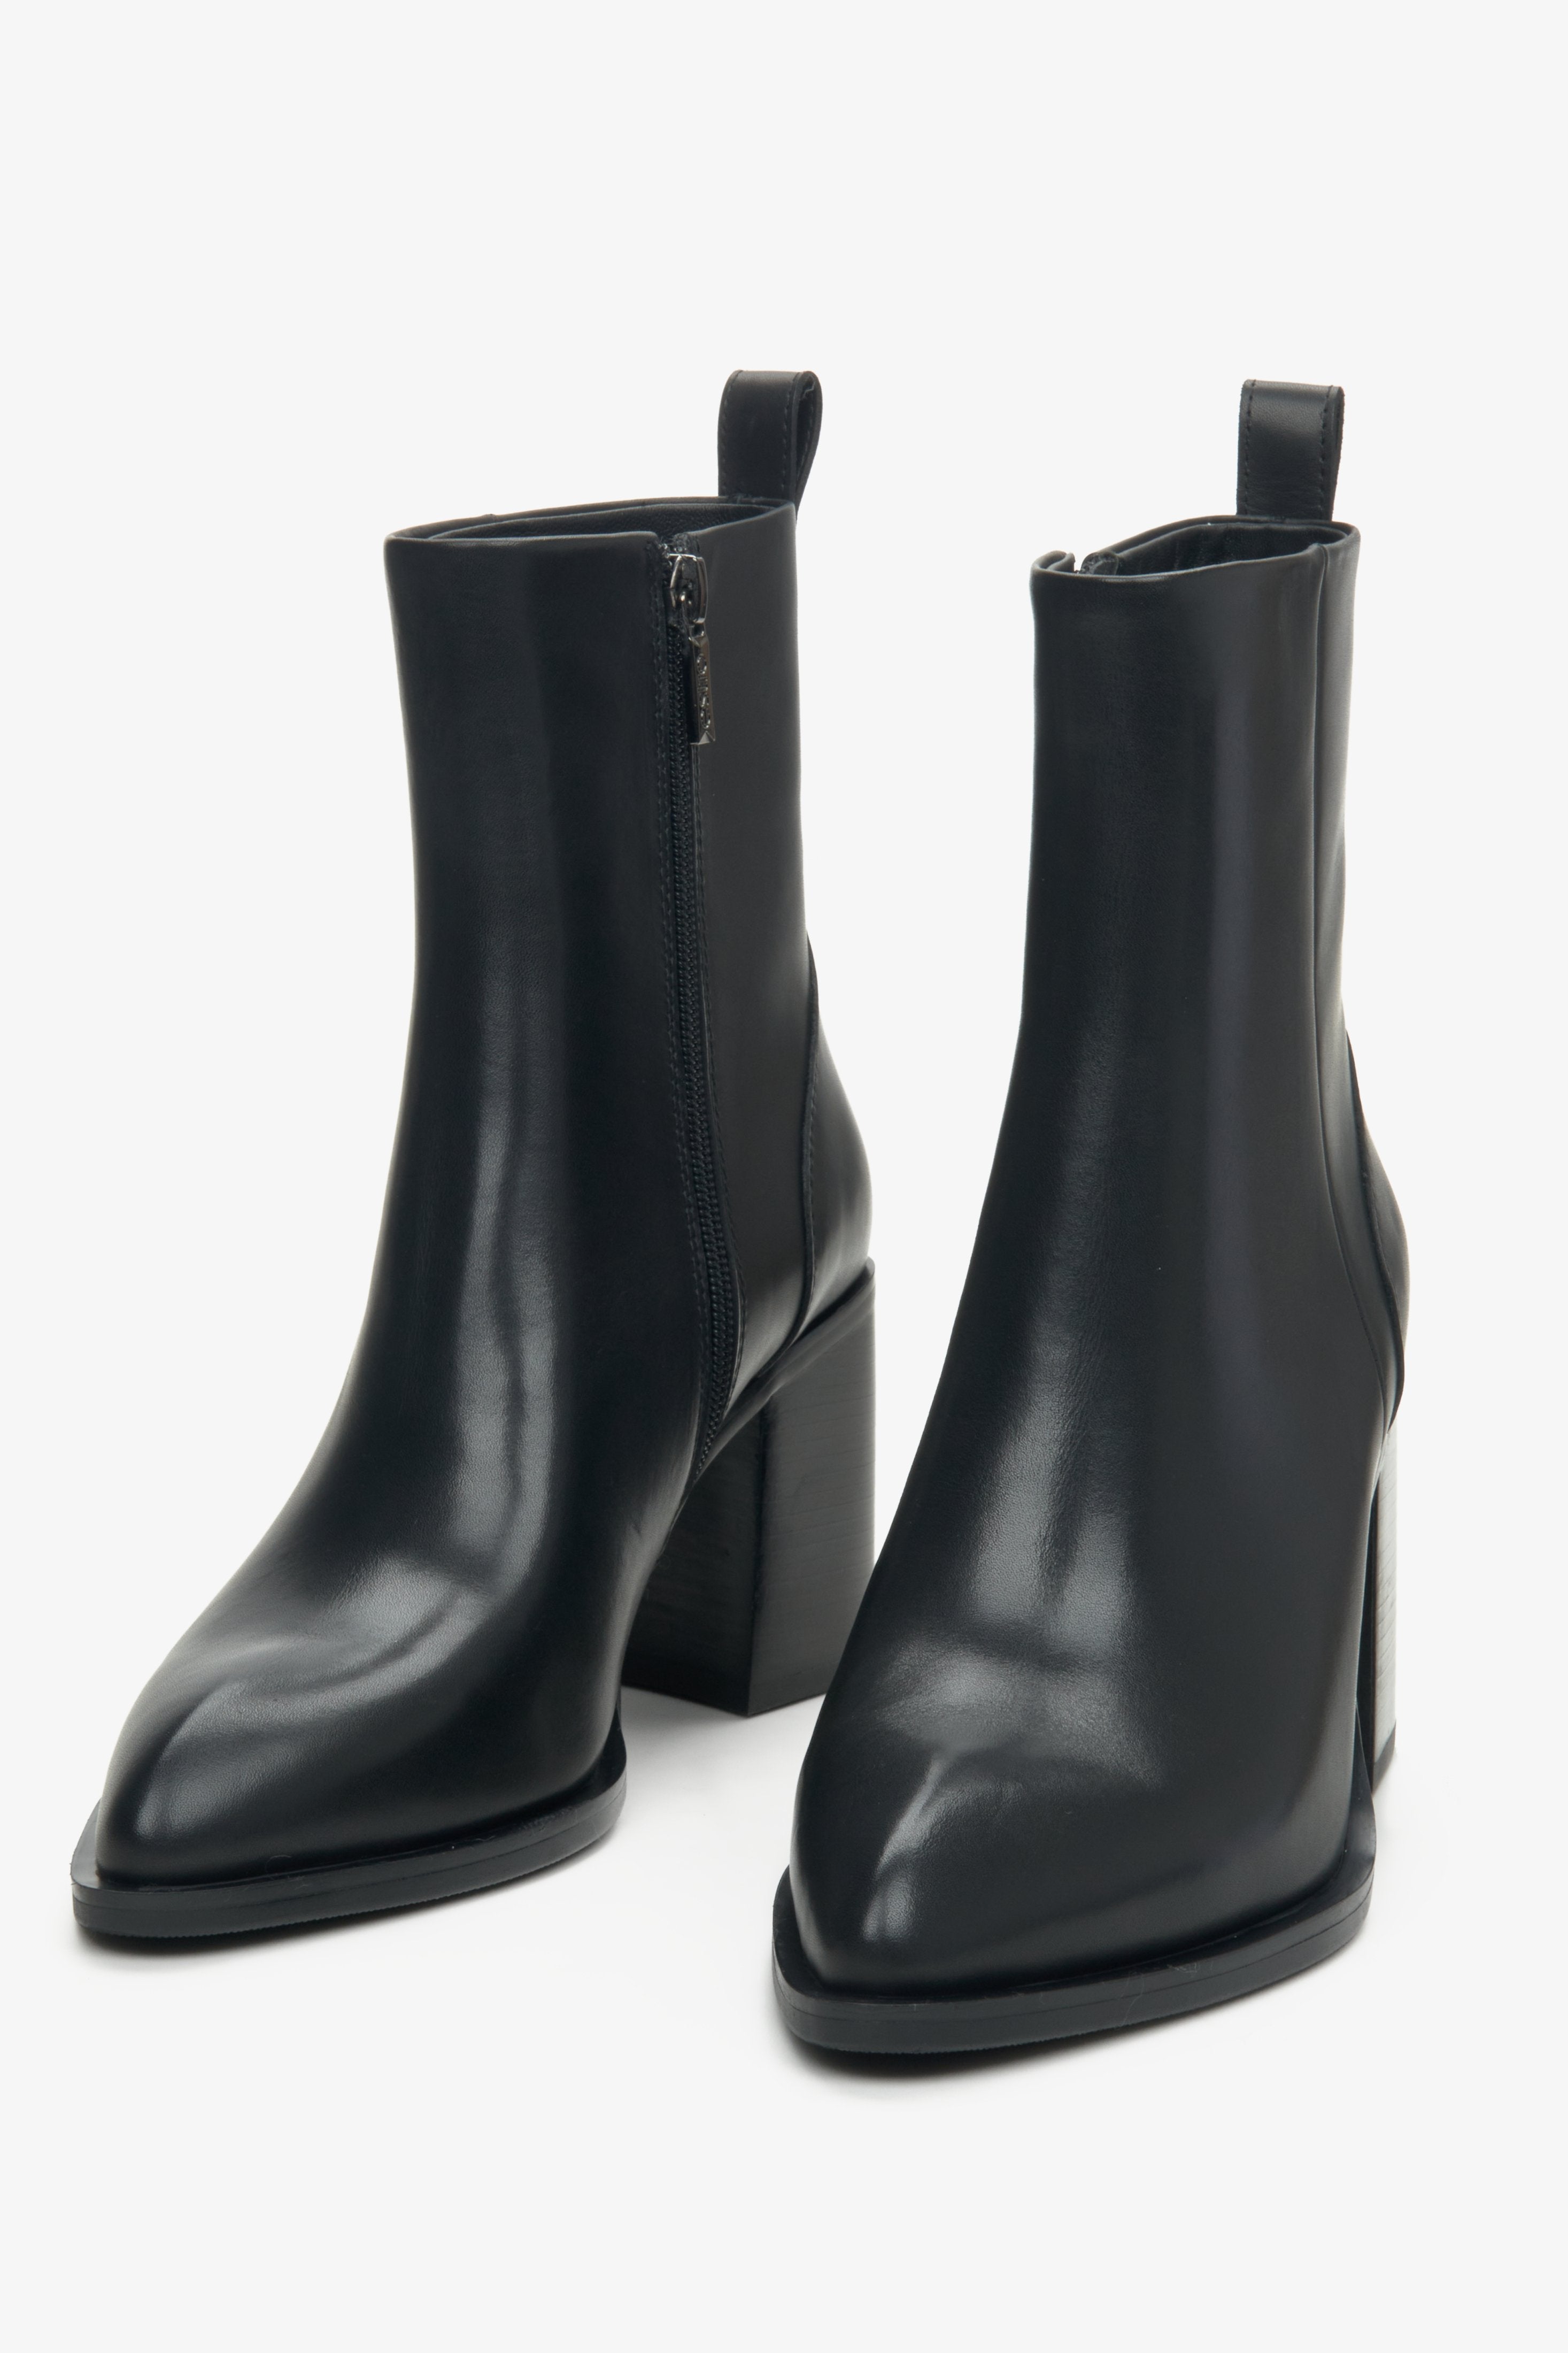 Czarne botki damskie ze skóry naturalnej w szpic marki Estro - przód butów.